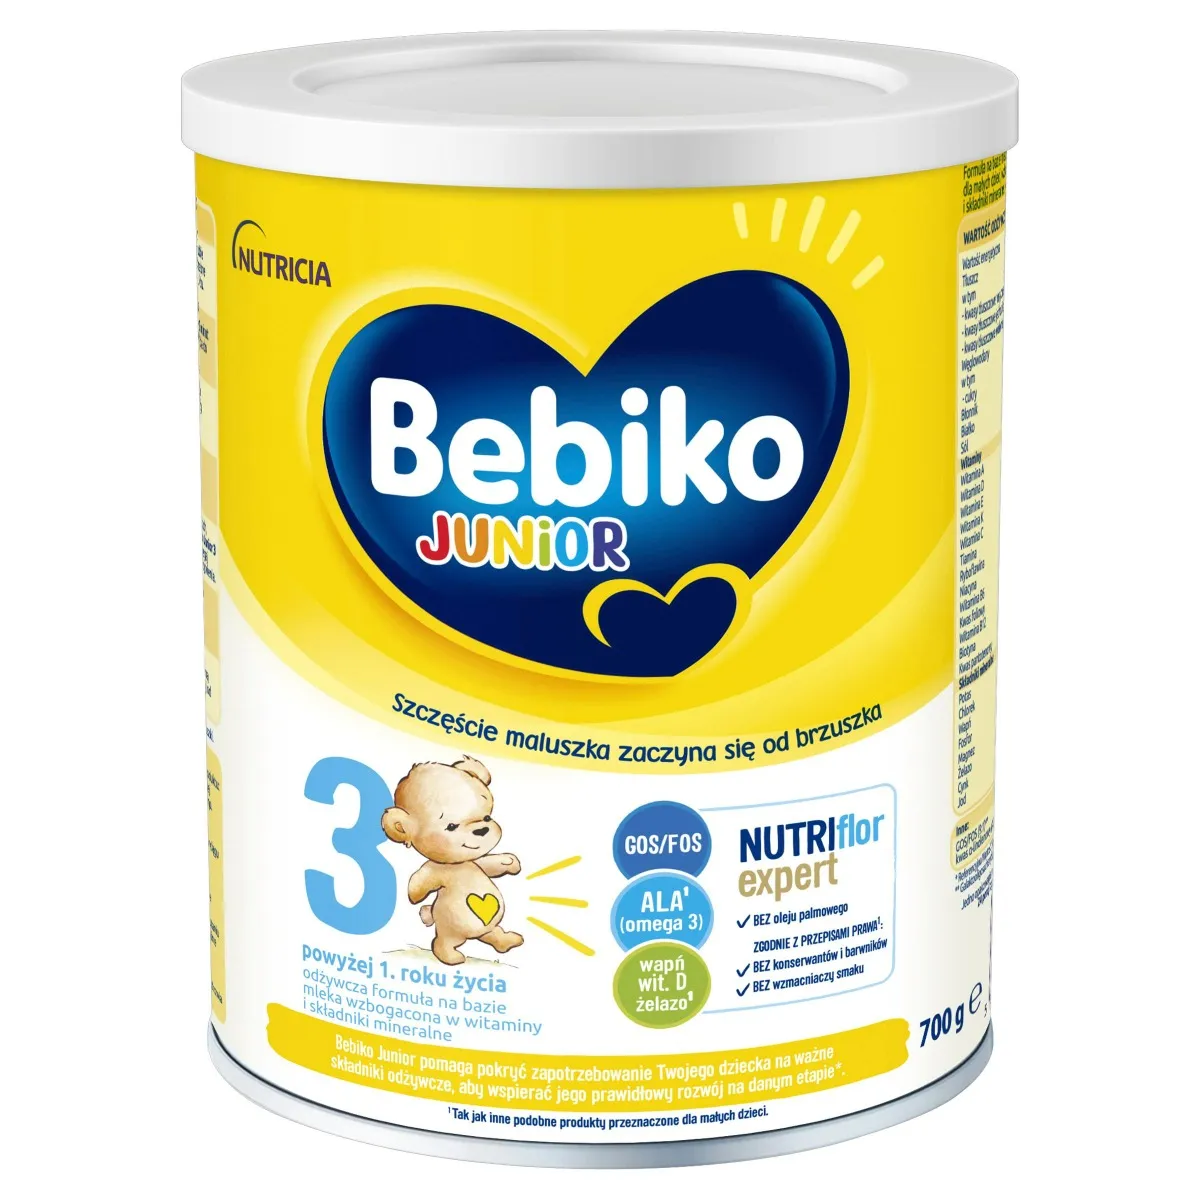 Bebiko Junior 3  Nutriflor Expert, mleko modyfikowane dla dzieci powyżej 1. roku życia, 700 g 